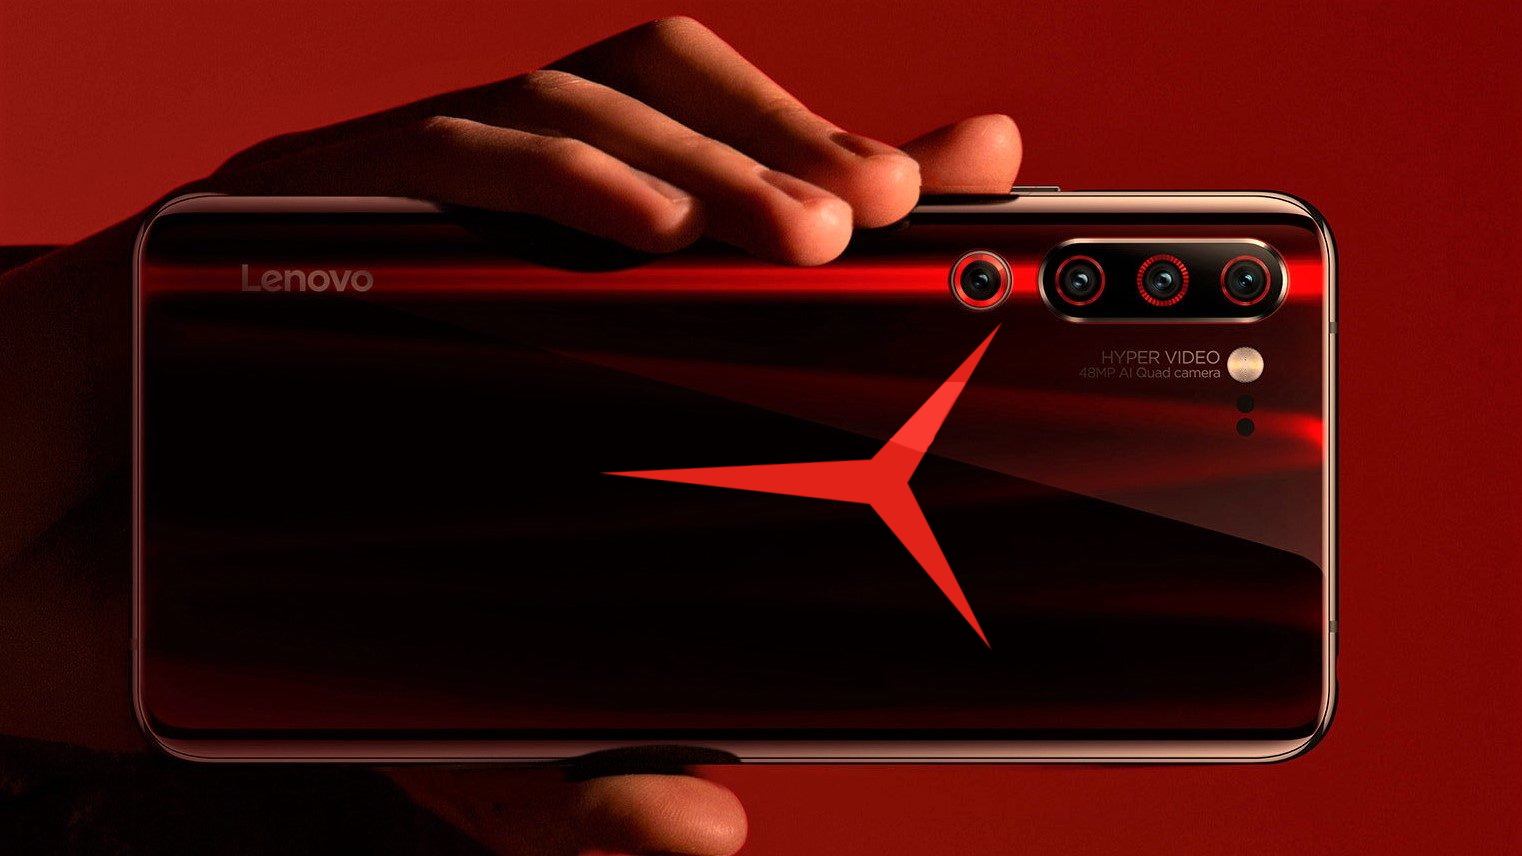 เทรนด์เกมมิ่งมาแรง…Lenovo เตรียมบุกตลาดมือถือเกมมิ่งด้วยซีรีส์ Legion Gaming Phone